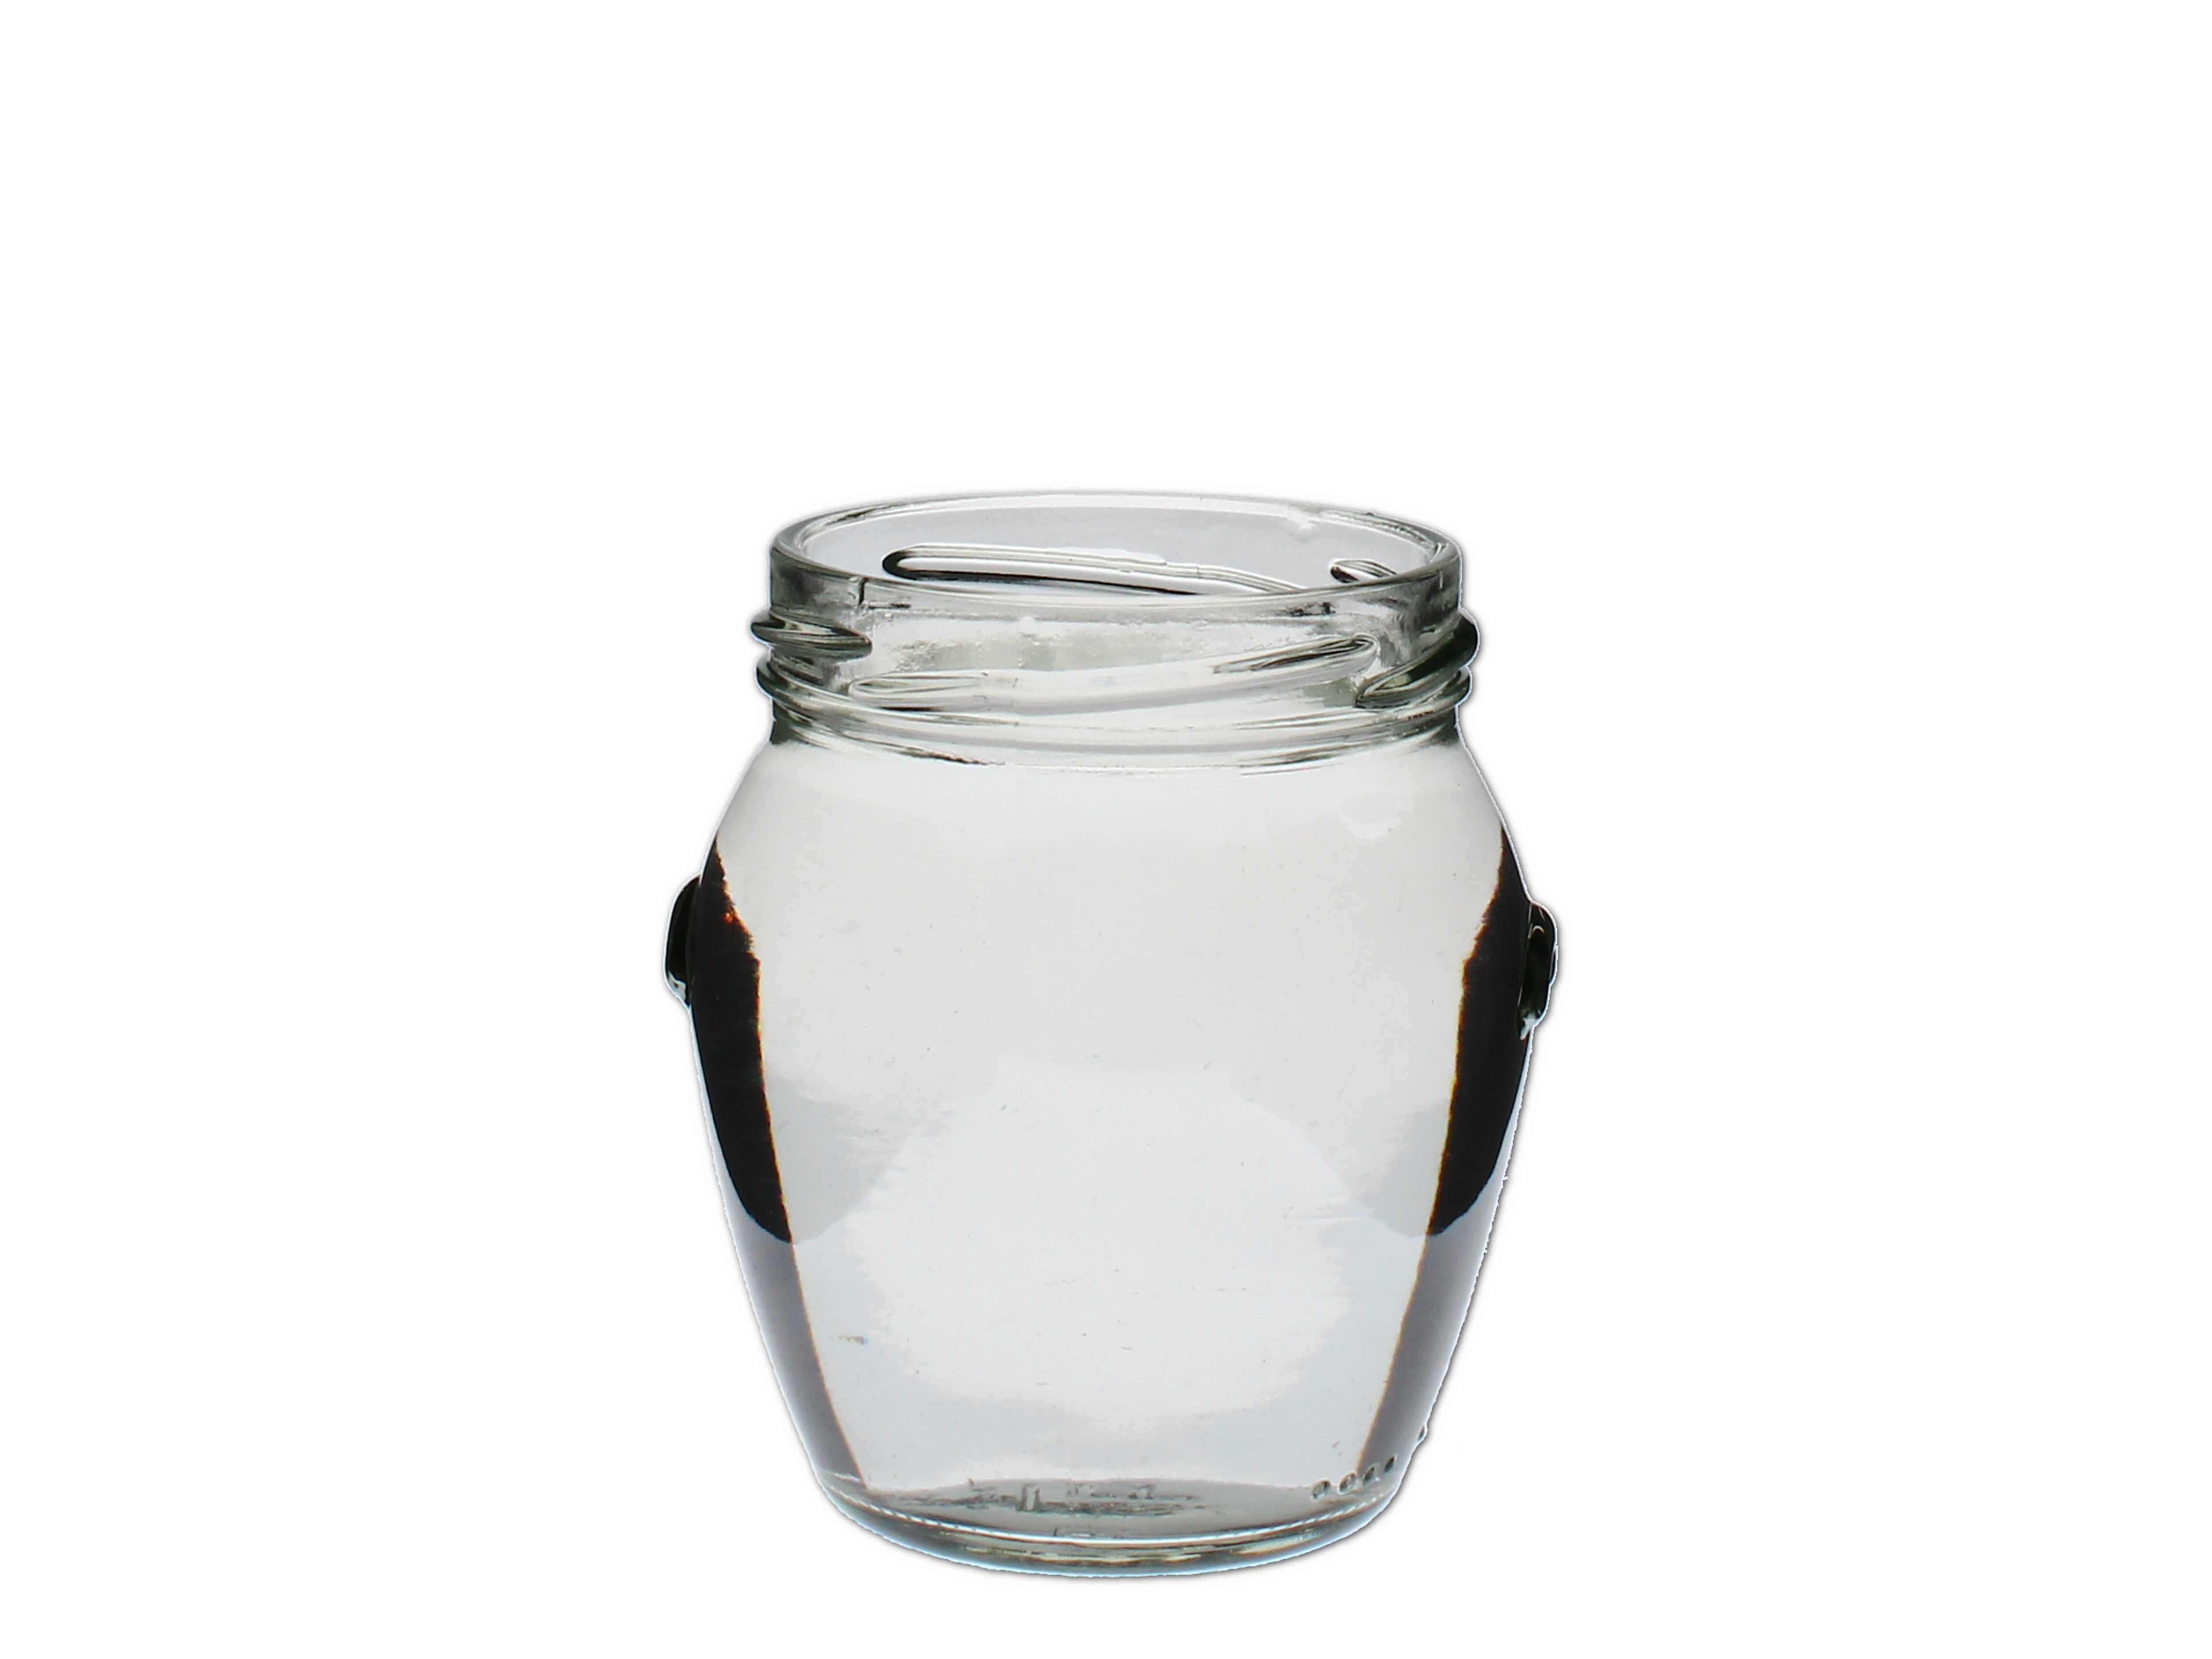    Schraubglass Orcio 212ml, weiss (TO63) - Abverkaufspreis